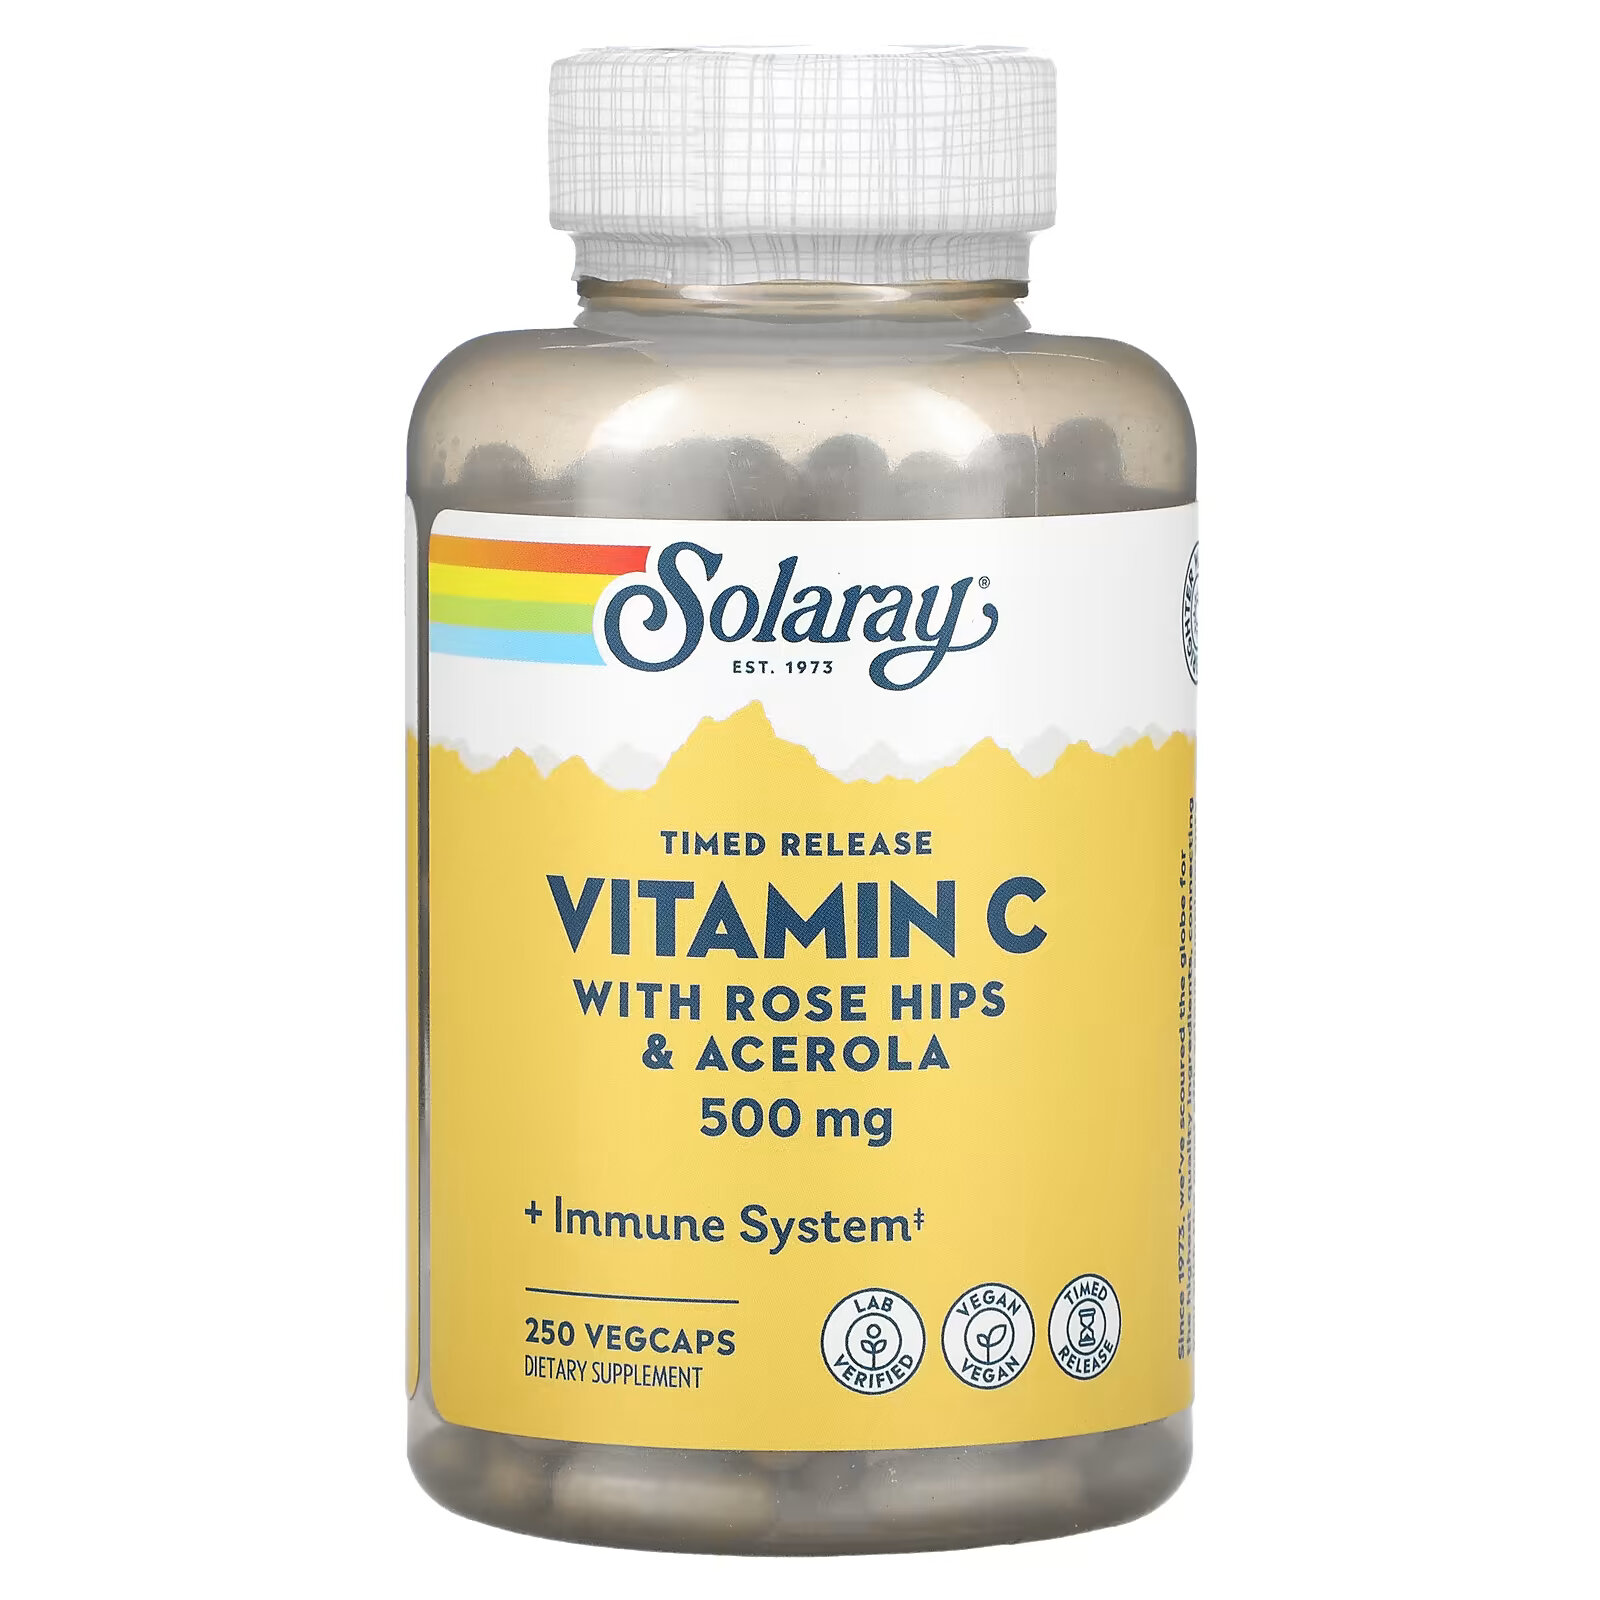 витамин c с концентратом биофлавоноидов solaray 500 мг 250 капсул Solaray, витамин C с медленным высвобождением, шиповник и ацерола, 500 мг, 250 растительных капсул